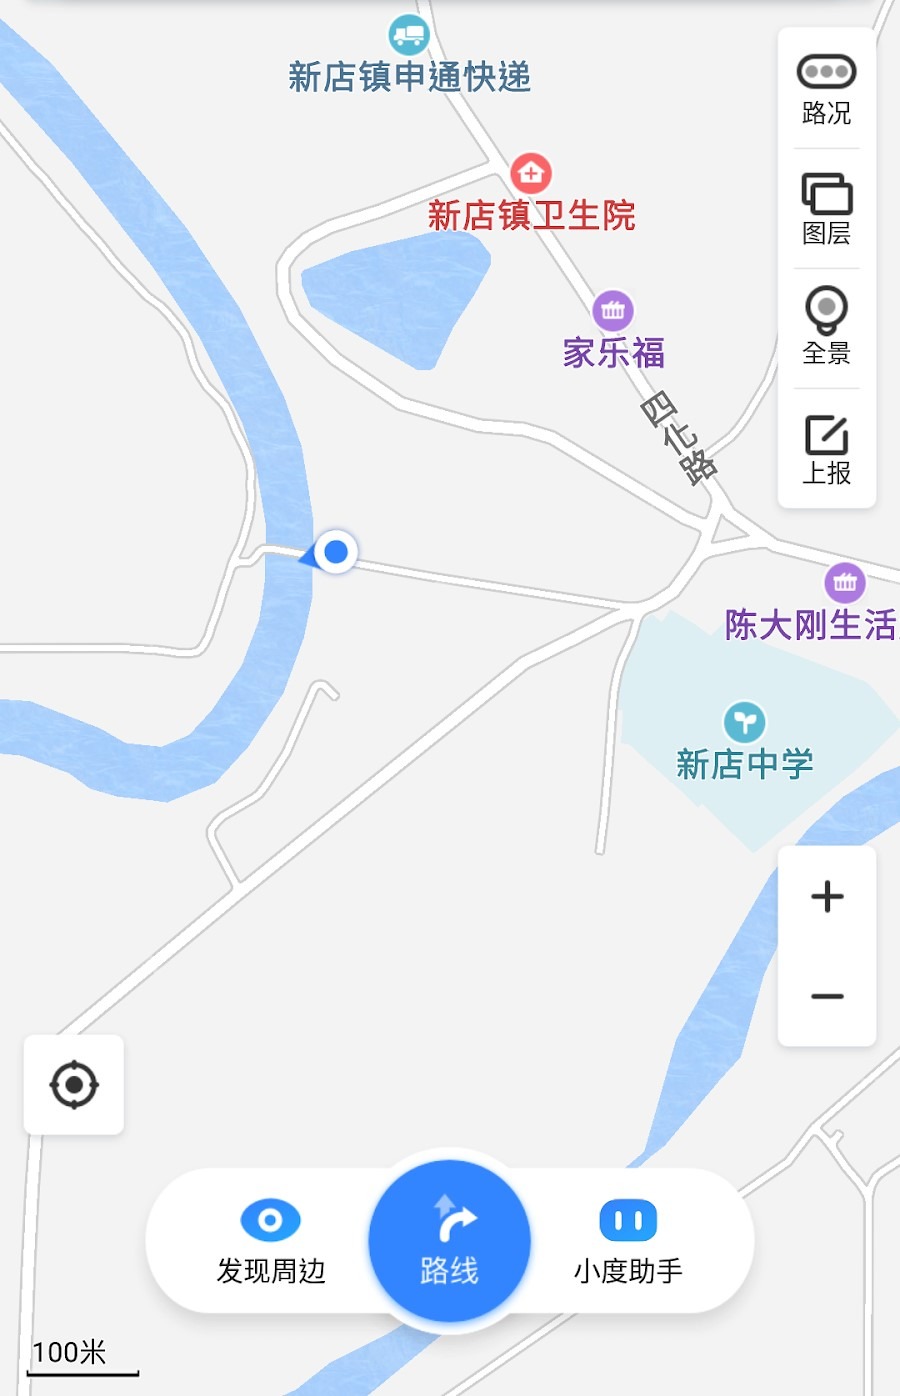 我們是由從新店客運站出發，藍色箭嘴標示萬安橋的位置。